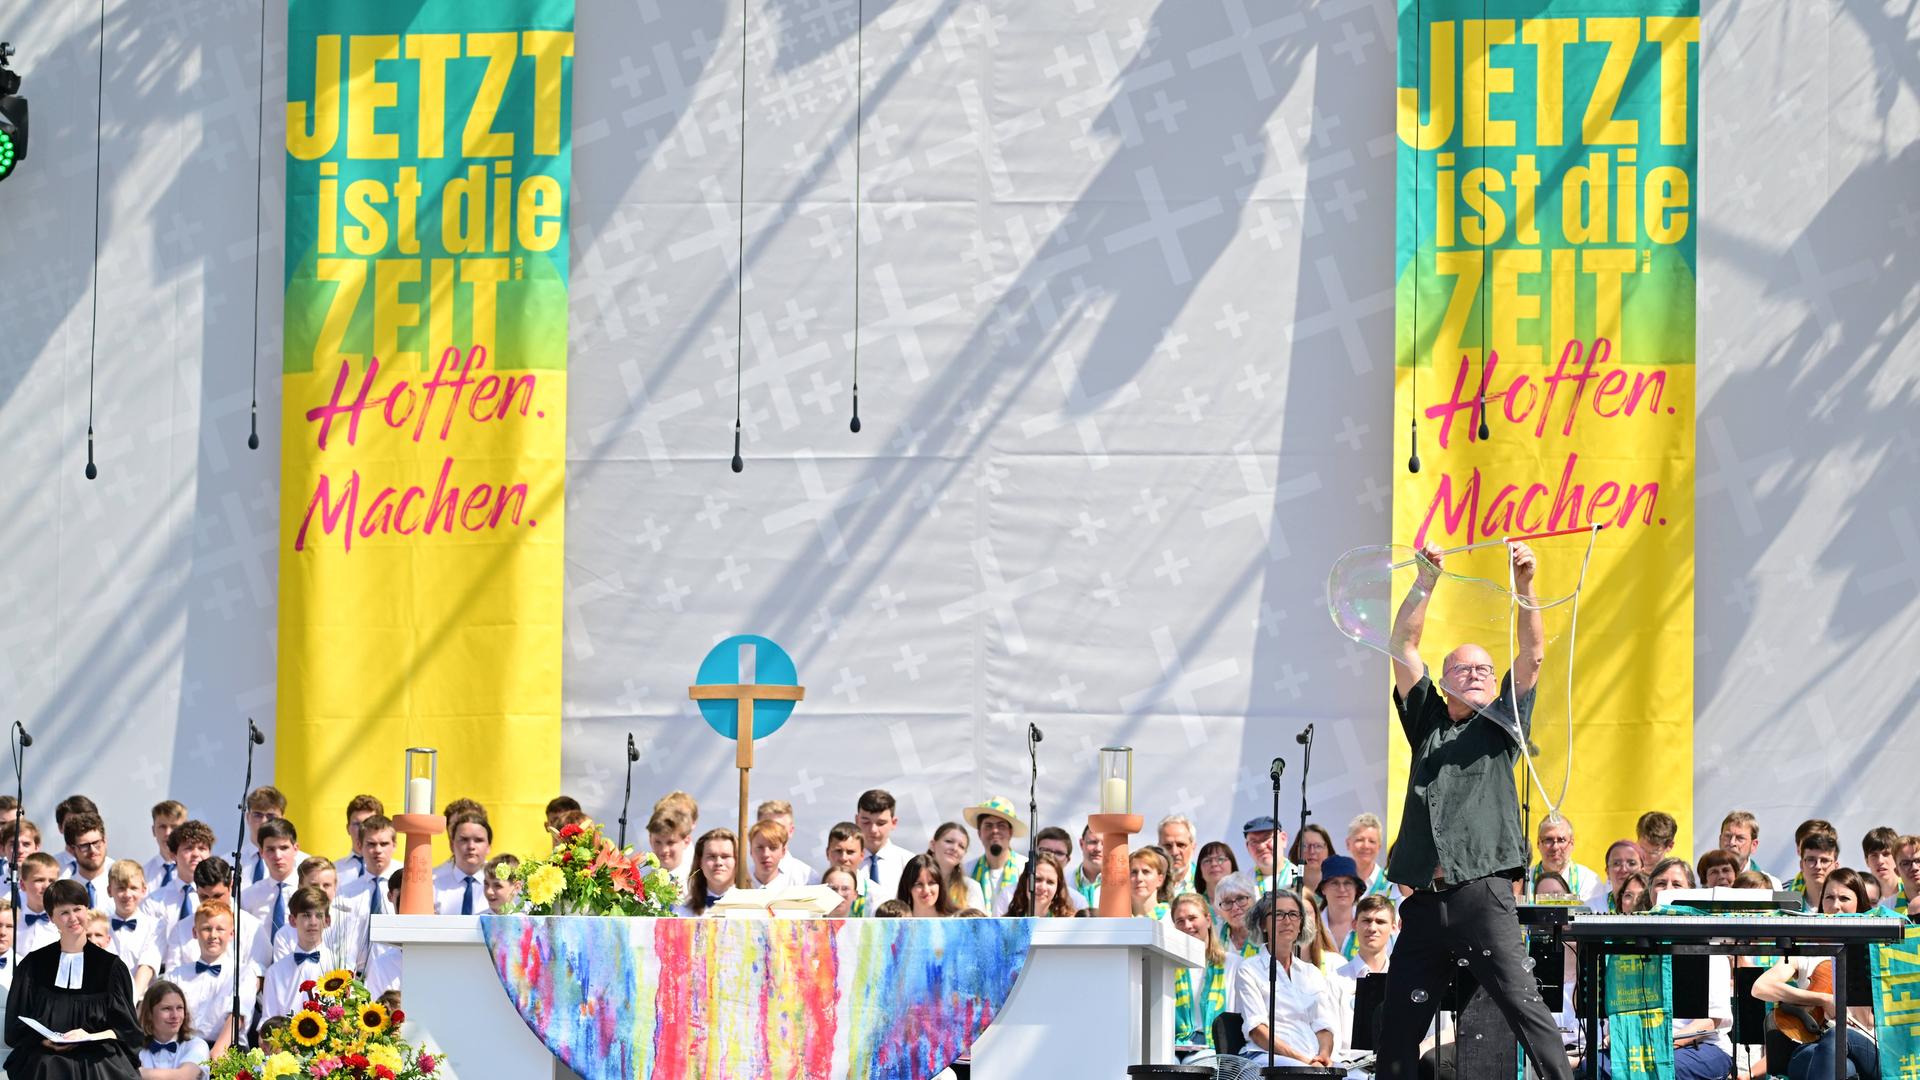 Abschlussgottesdienst des Evangelischen Kirchentags in Nürnberg. Ein Seifenblasenkünstler steht vor einem Altar auf der Bühne. Im Hintergrund sind zwei Banner mit der Aufschrift "jetzt ist die Zeit. Hoffen. Machen"